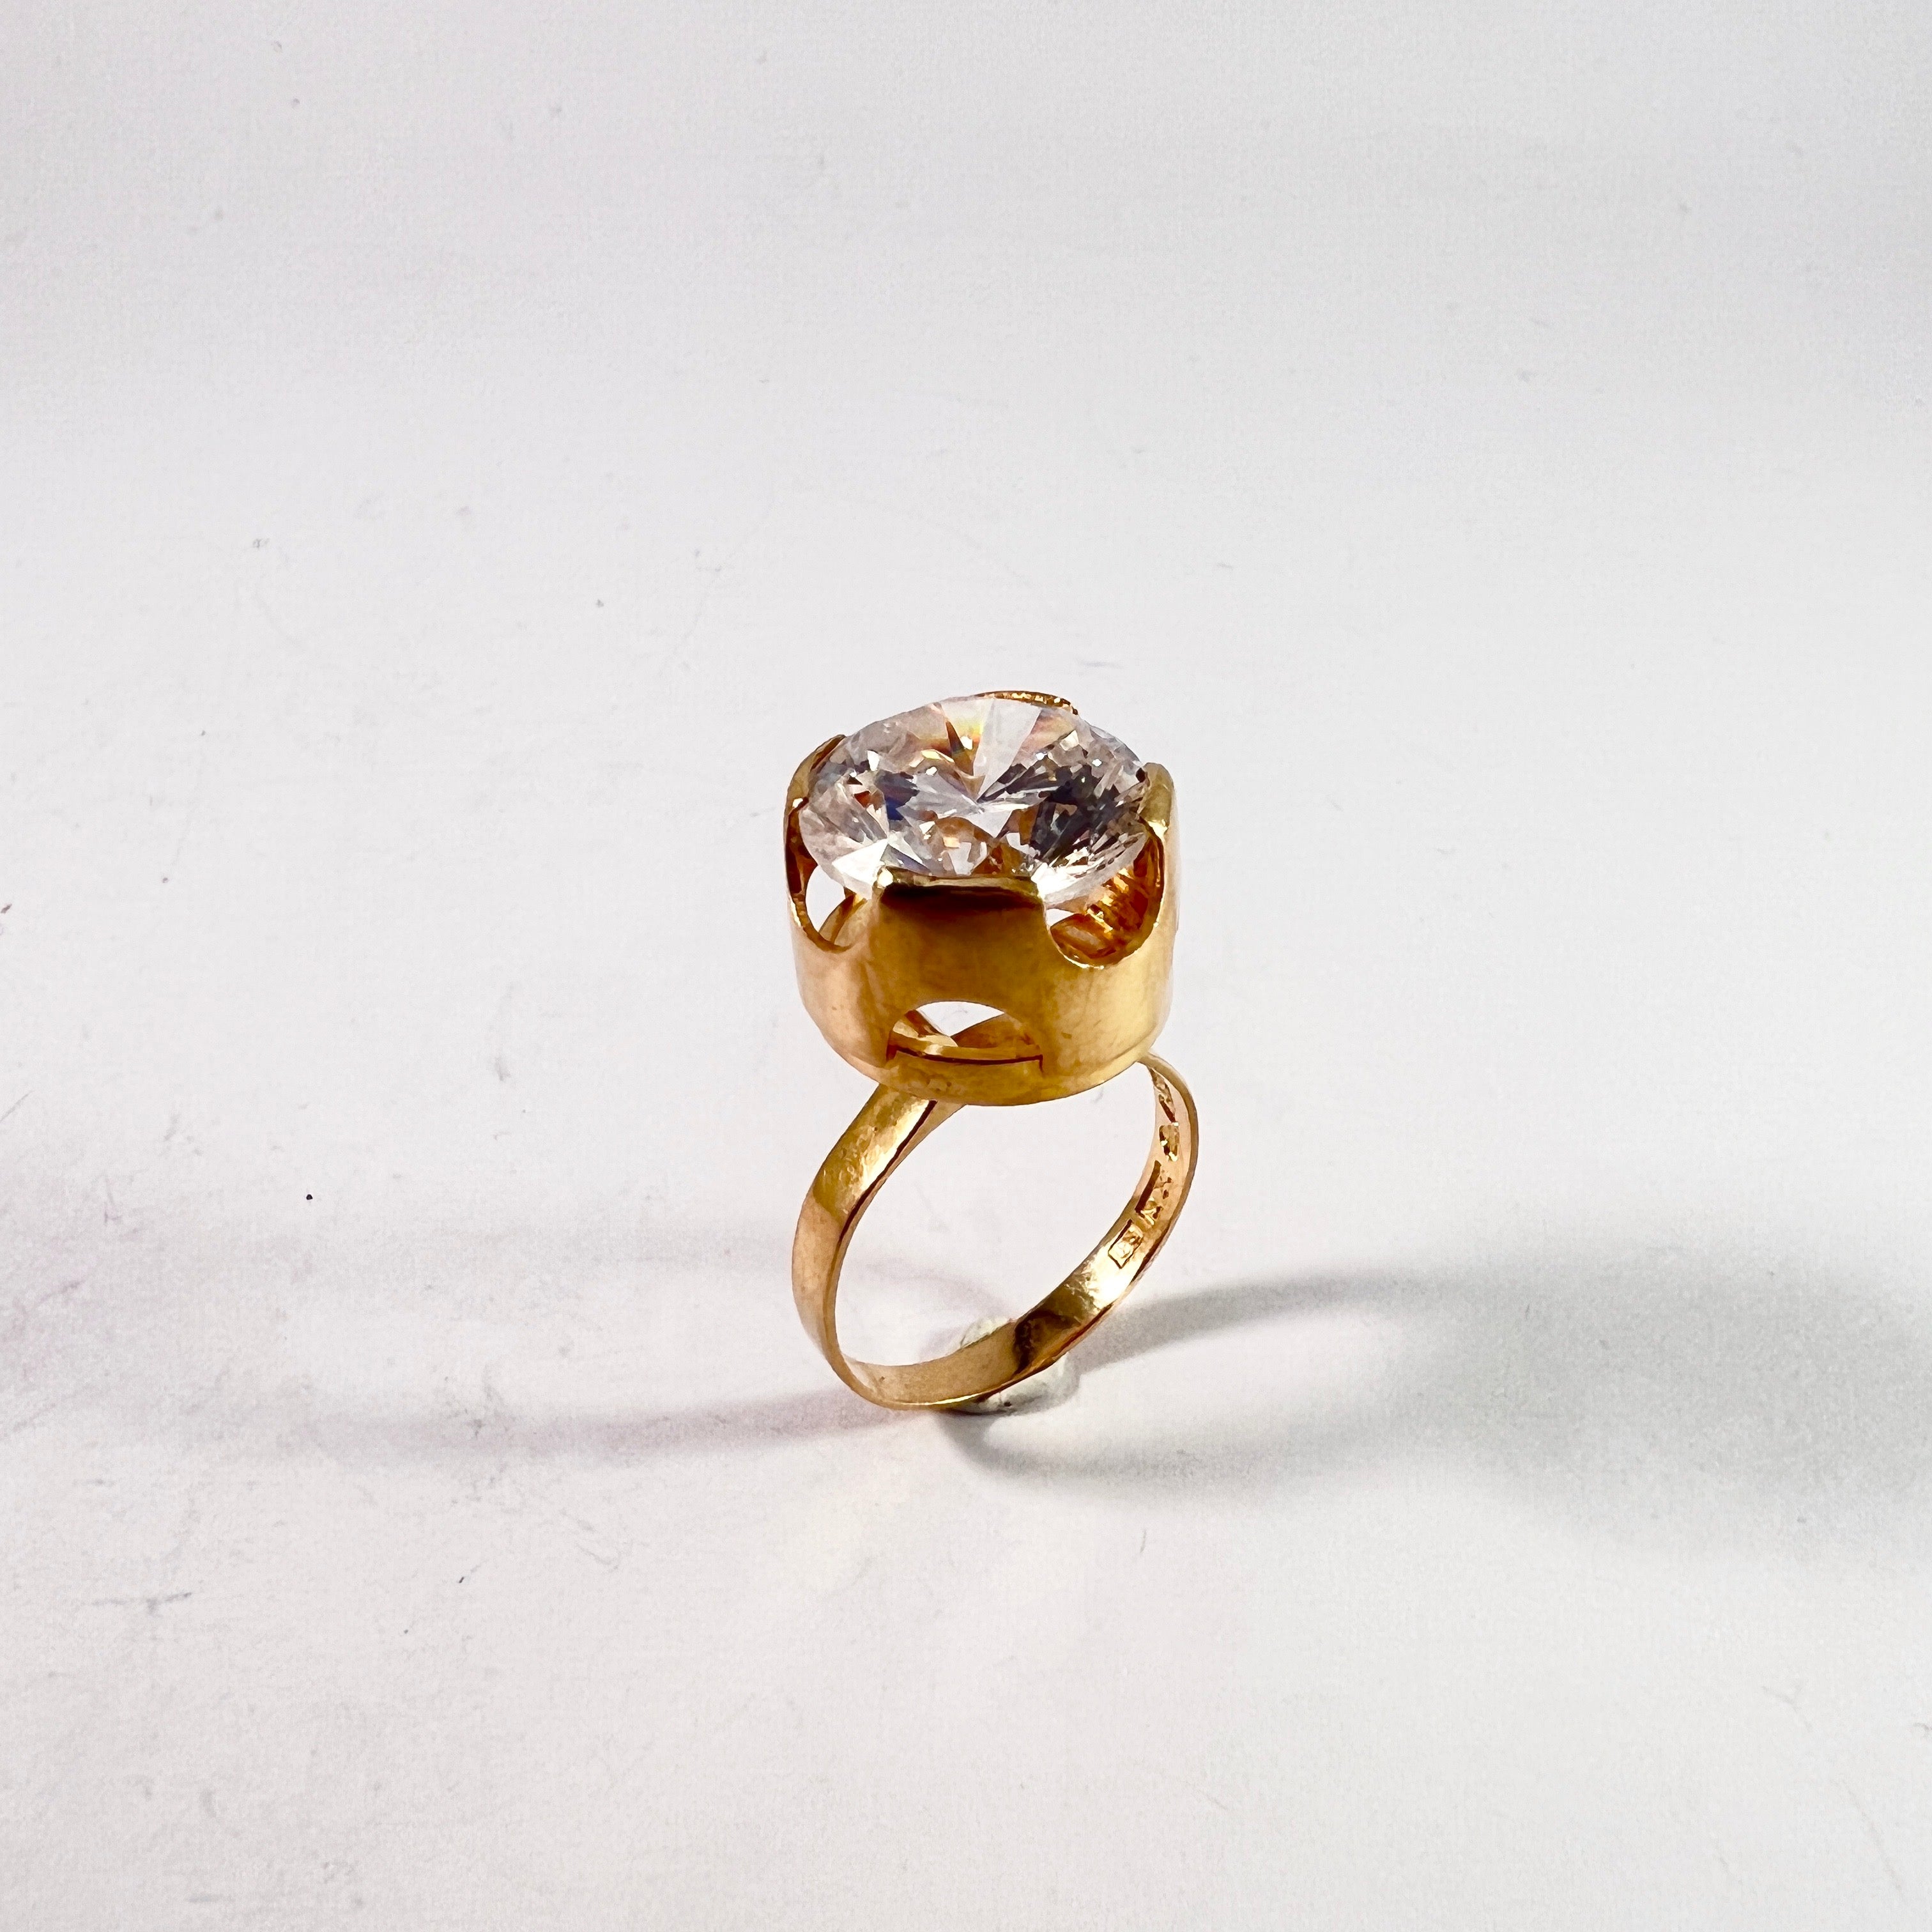 Sundell, Sweden 1967. Vintage Modernist 18k Gold Rock Crystal Ring.